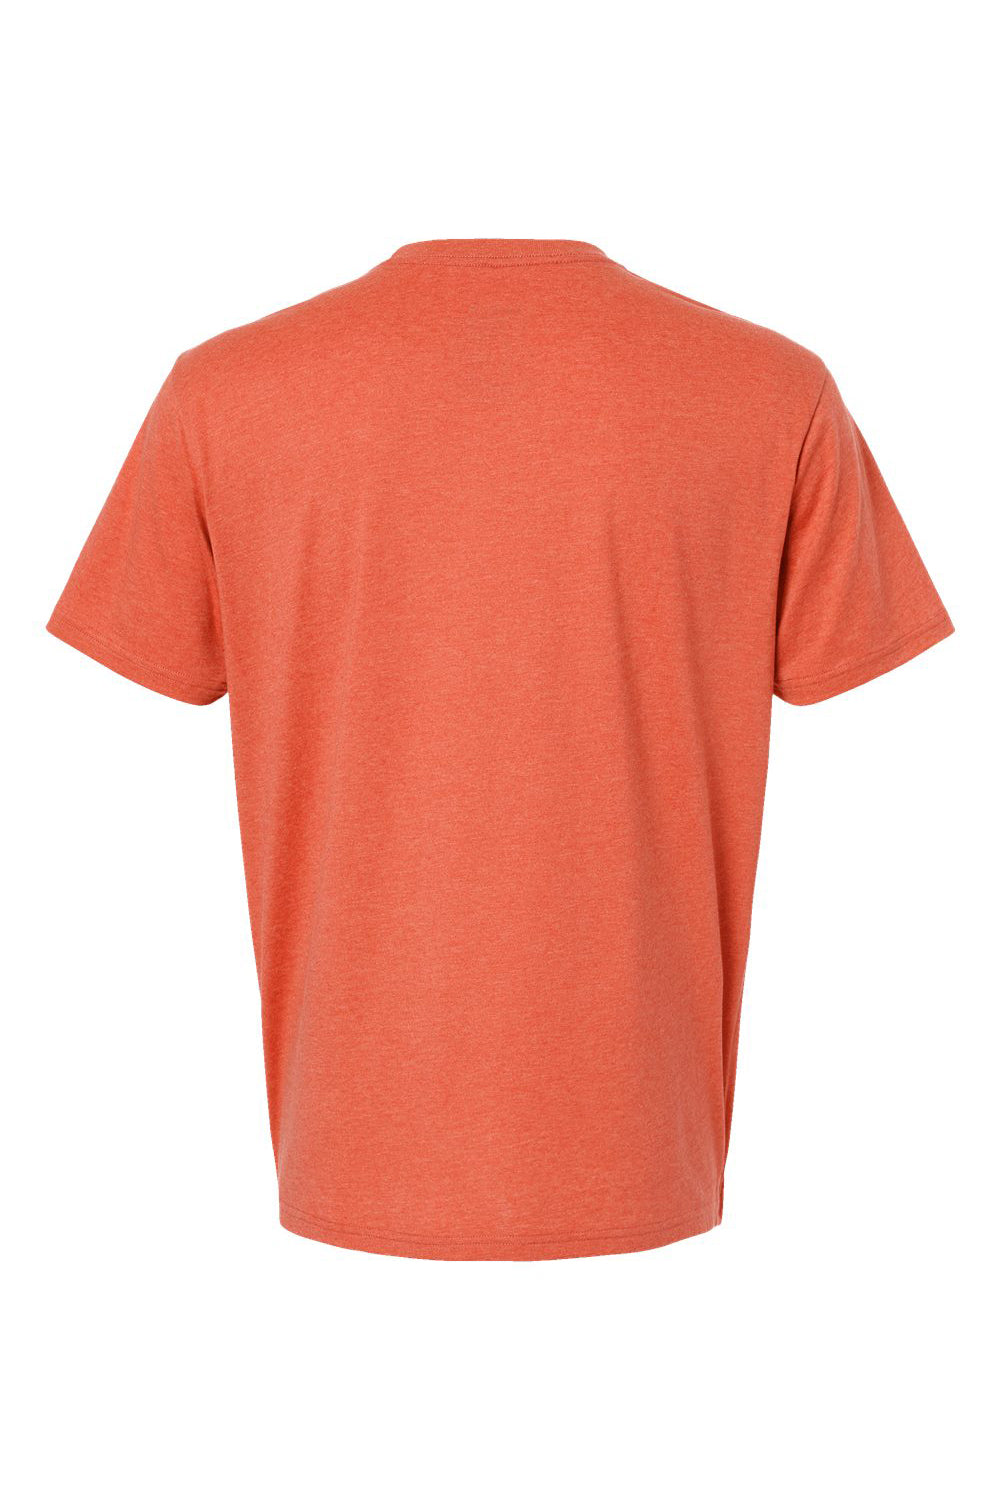 Kastlfel 2010 Mens RecycledSoft Short Sleve Crewneck T-Shirt Orange Flat Back